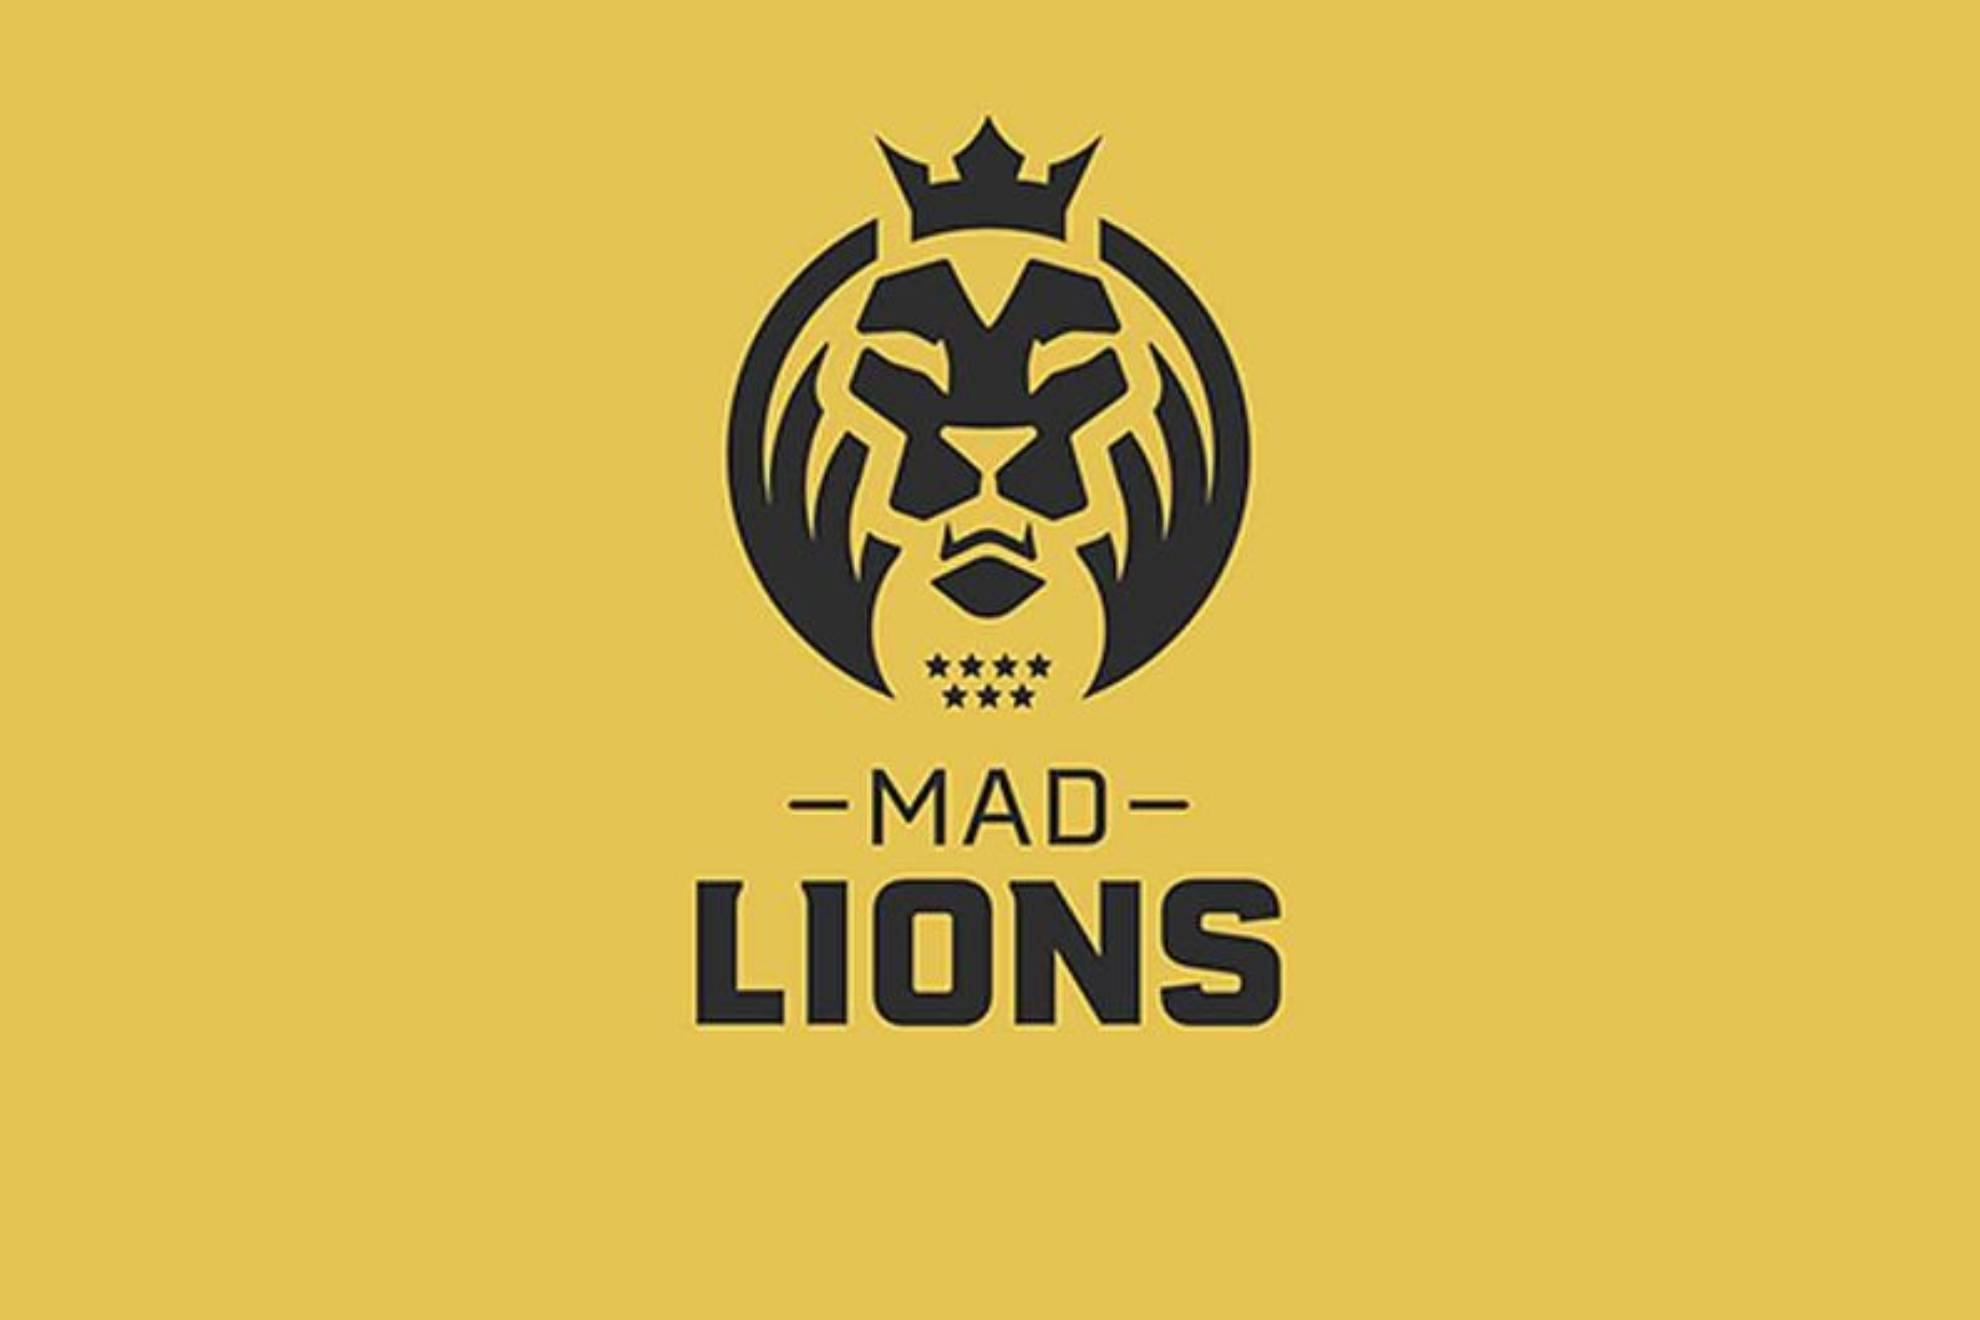 MAD Lions KOI abandonara su equipo femenino de League of Legends